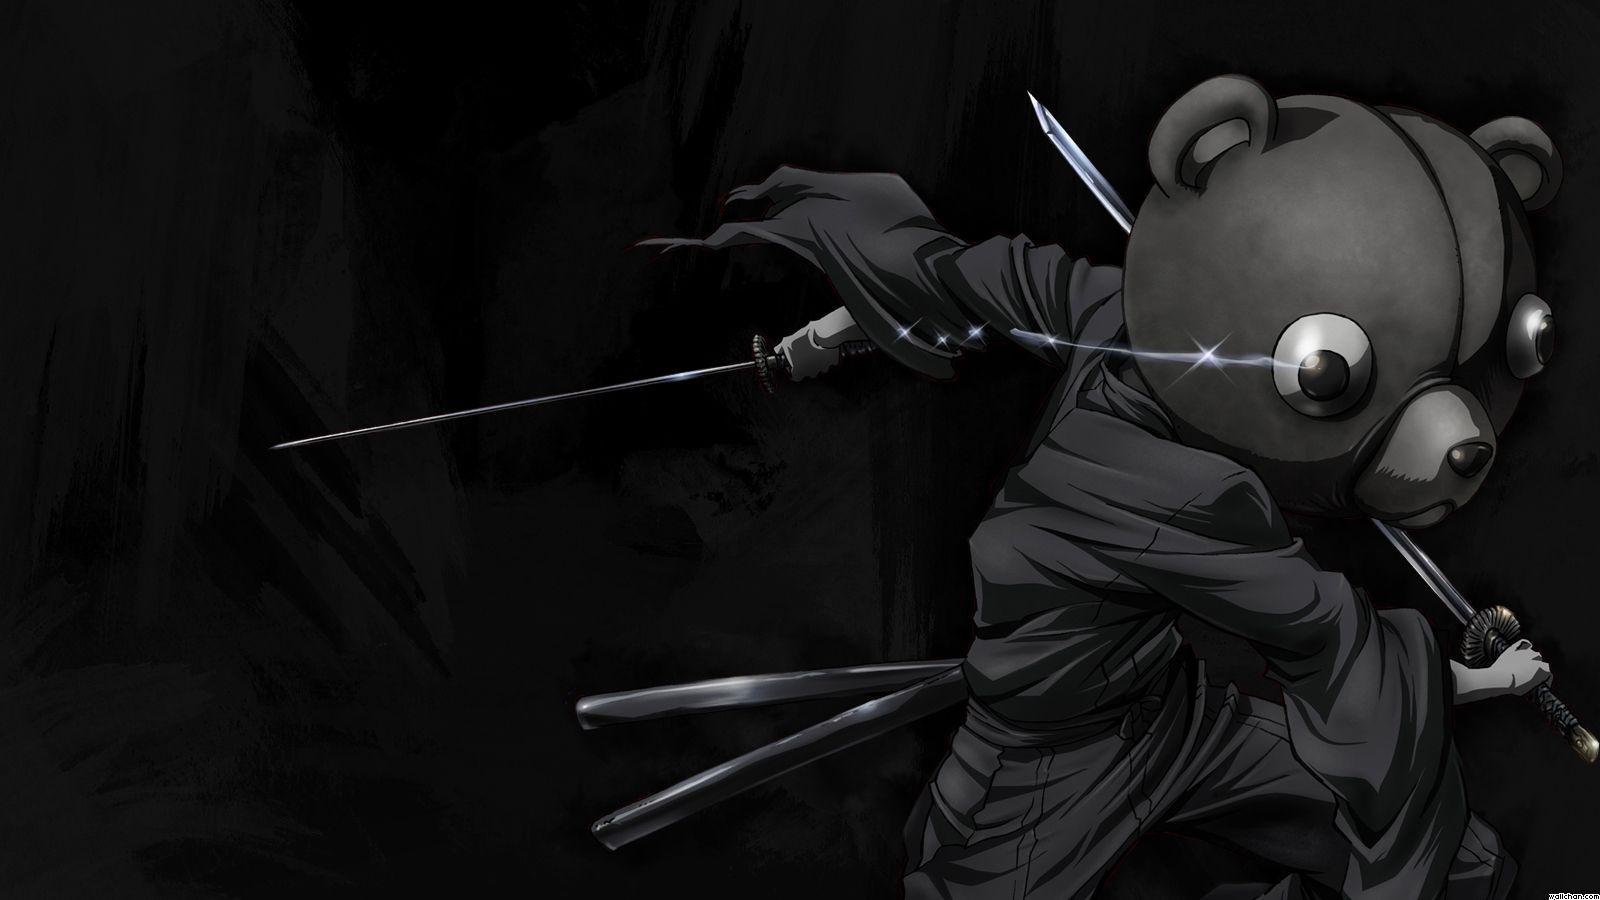 Afro Samurai vs Kuma Wallpaper. cartoonwallpaperhd.com